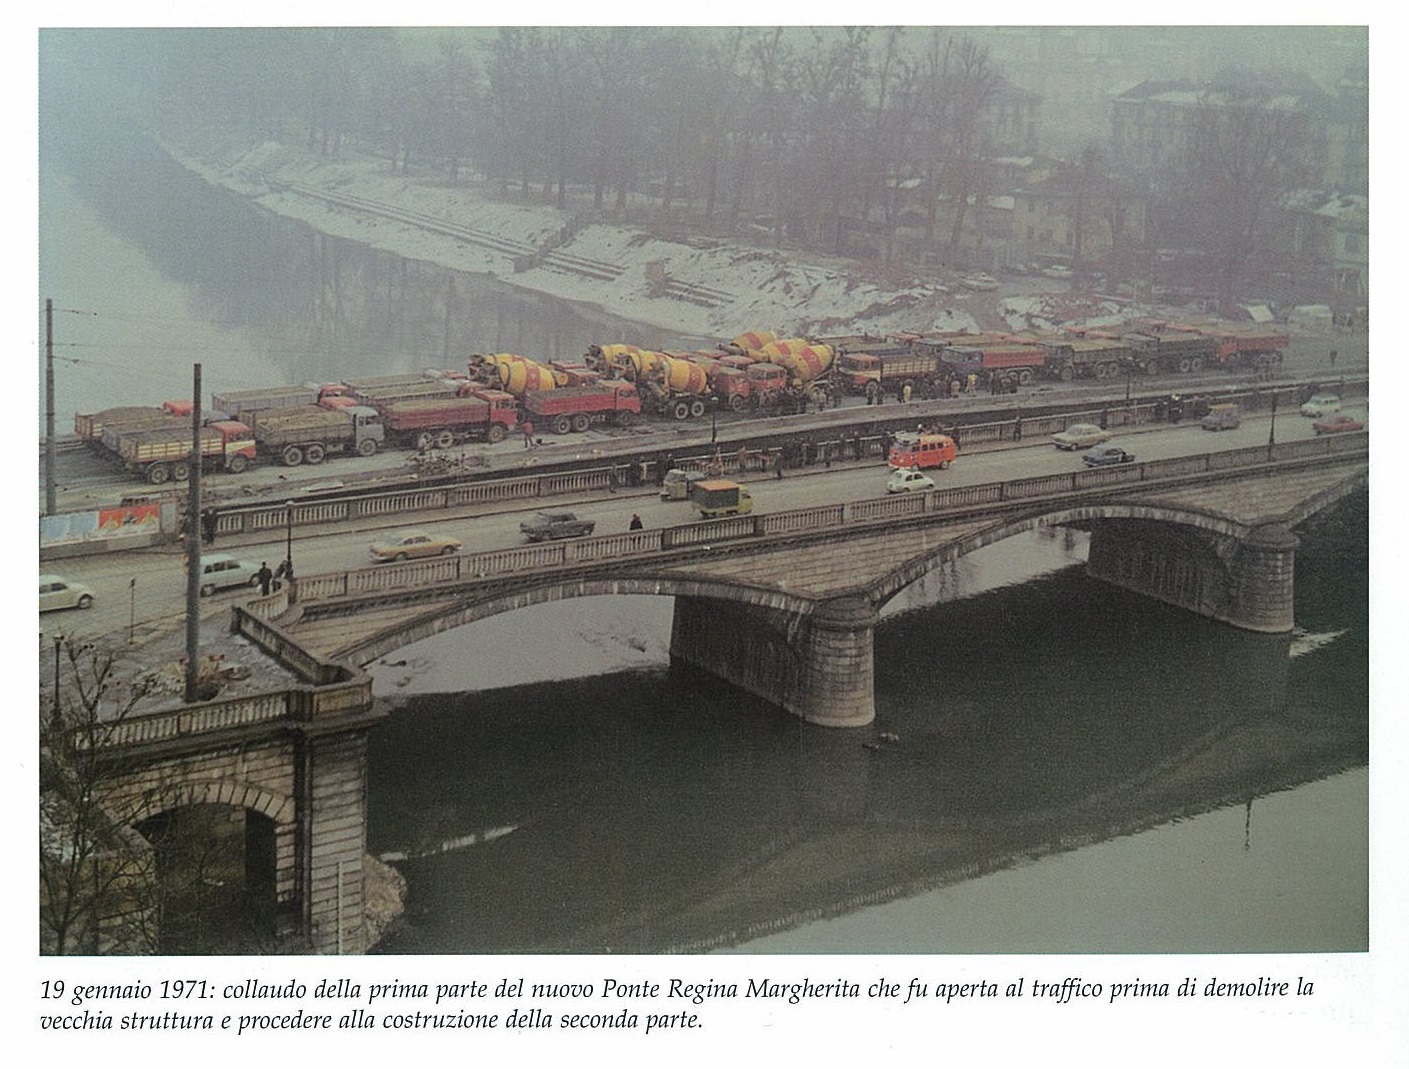 L'impossibilità di mantenere la vecchia struttura del ponte @ Ponte Regina Margherita